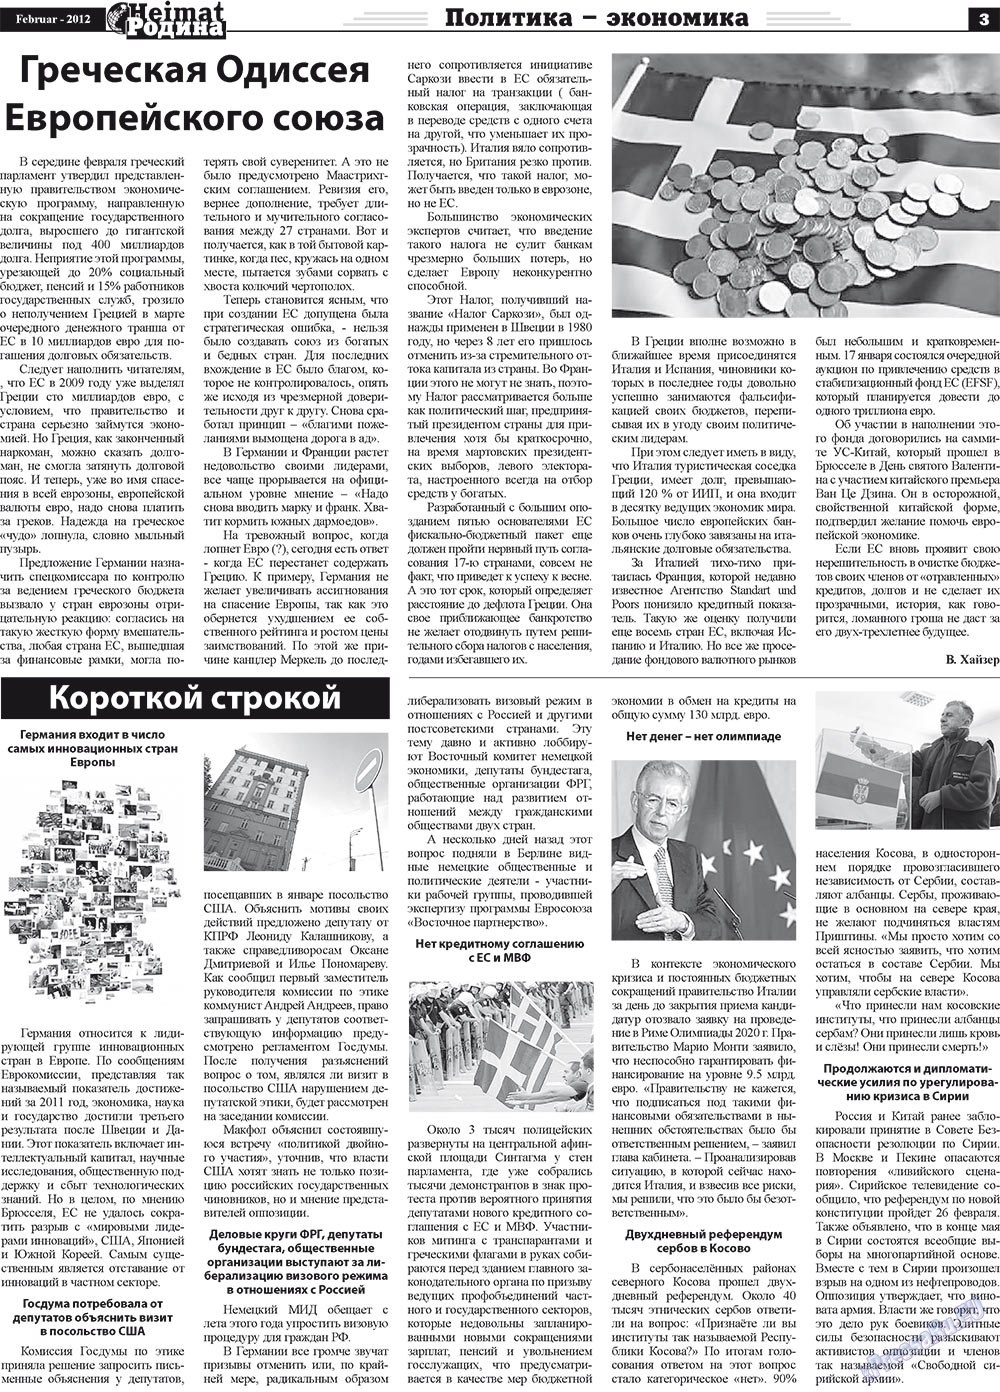 Heimat-Родина (газета). 2012 год, номер 2, стр. 3